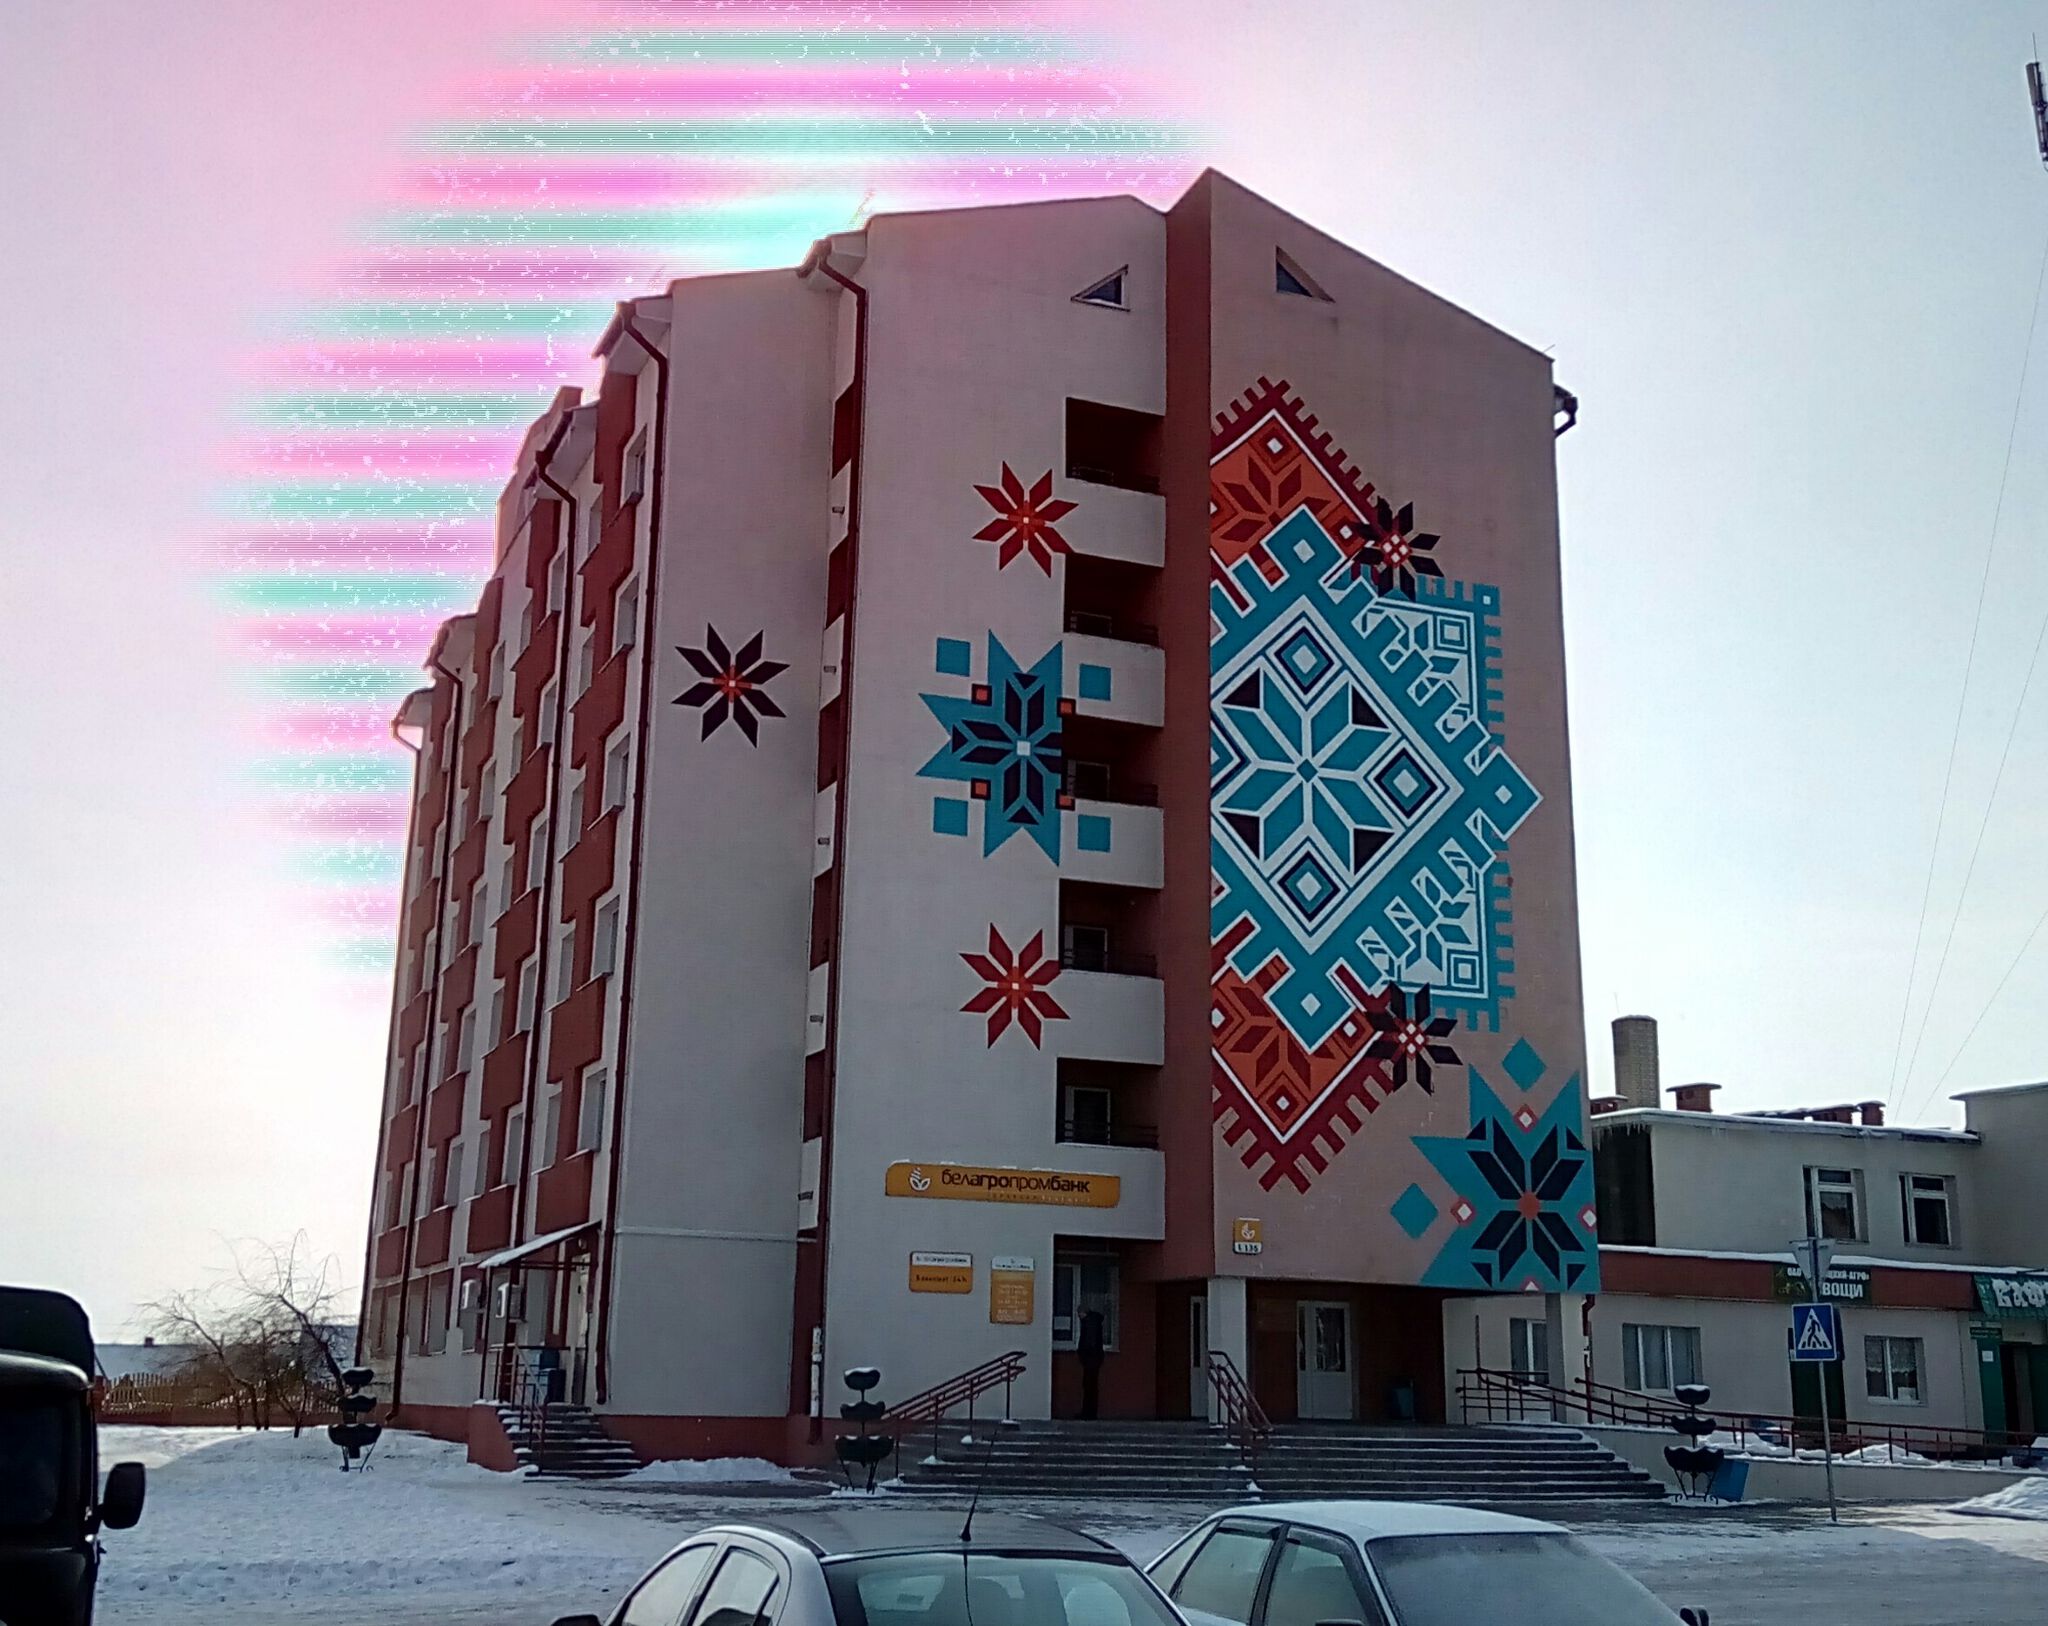 Zadelo.by&mdash;Беларускі арнамент / Belarusian Ornament